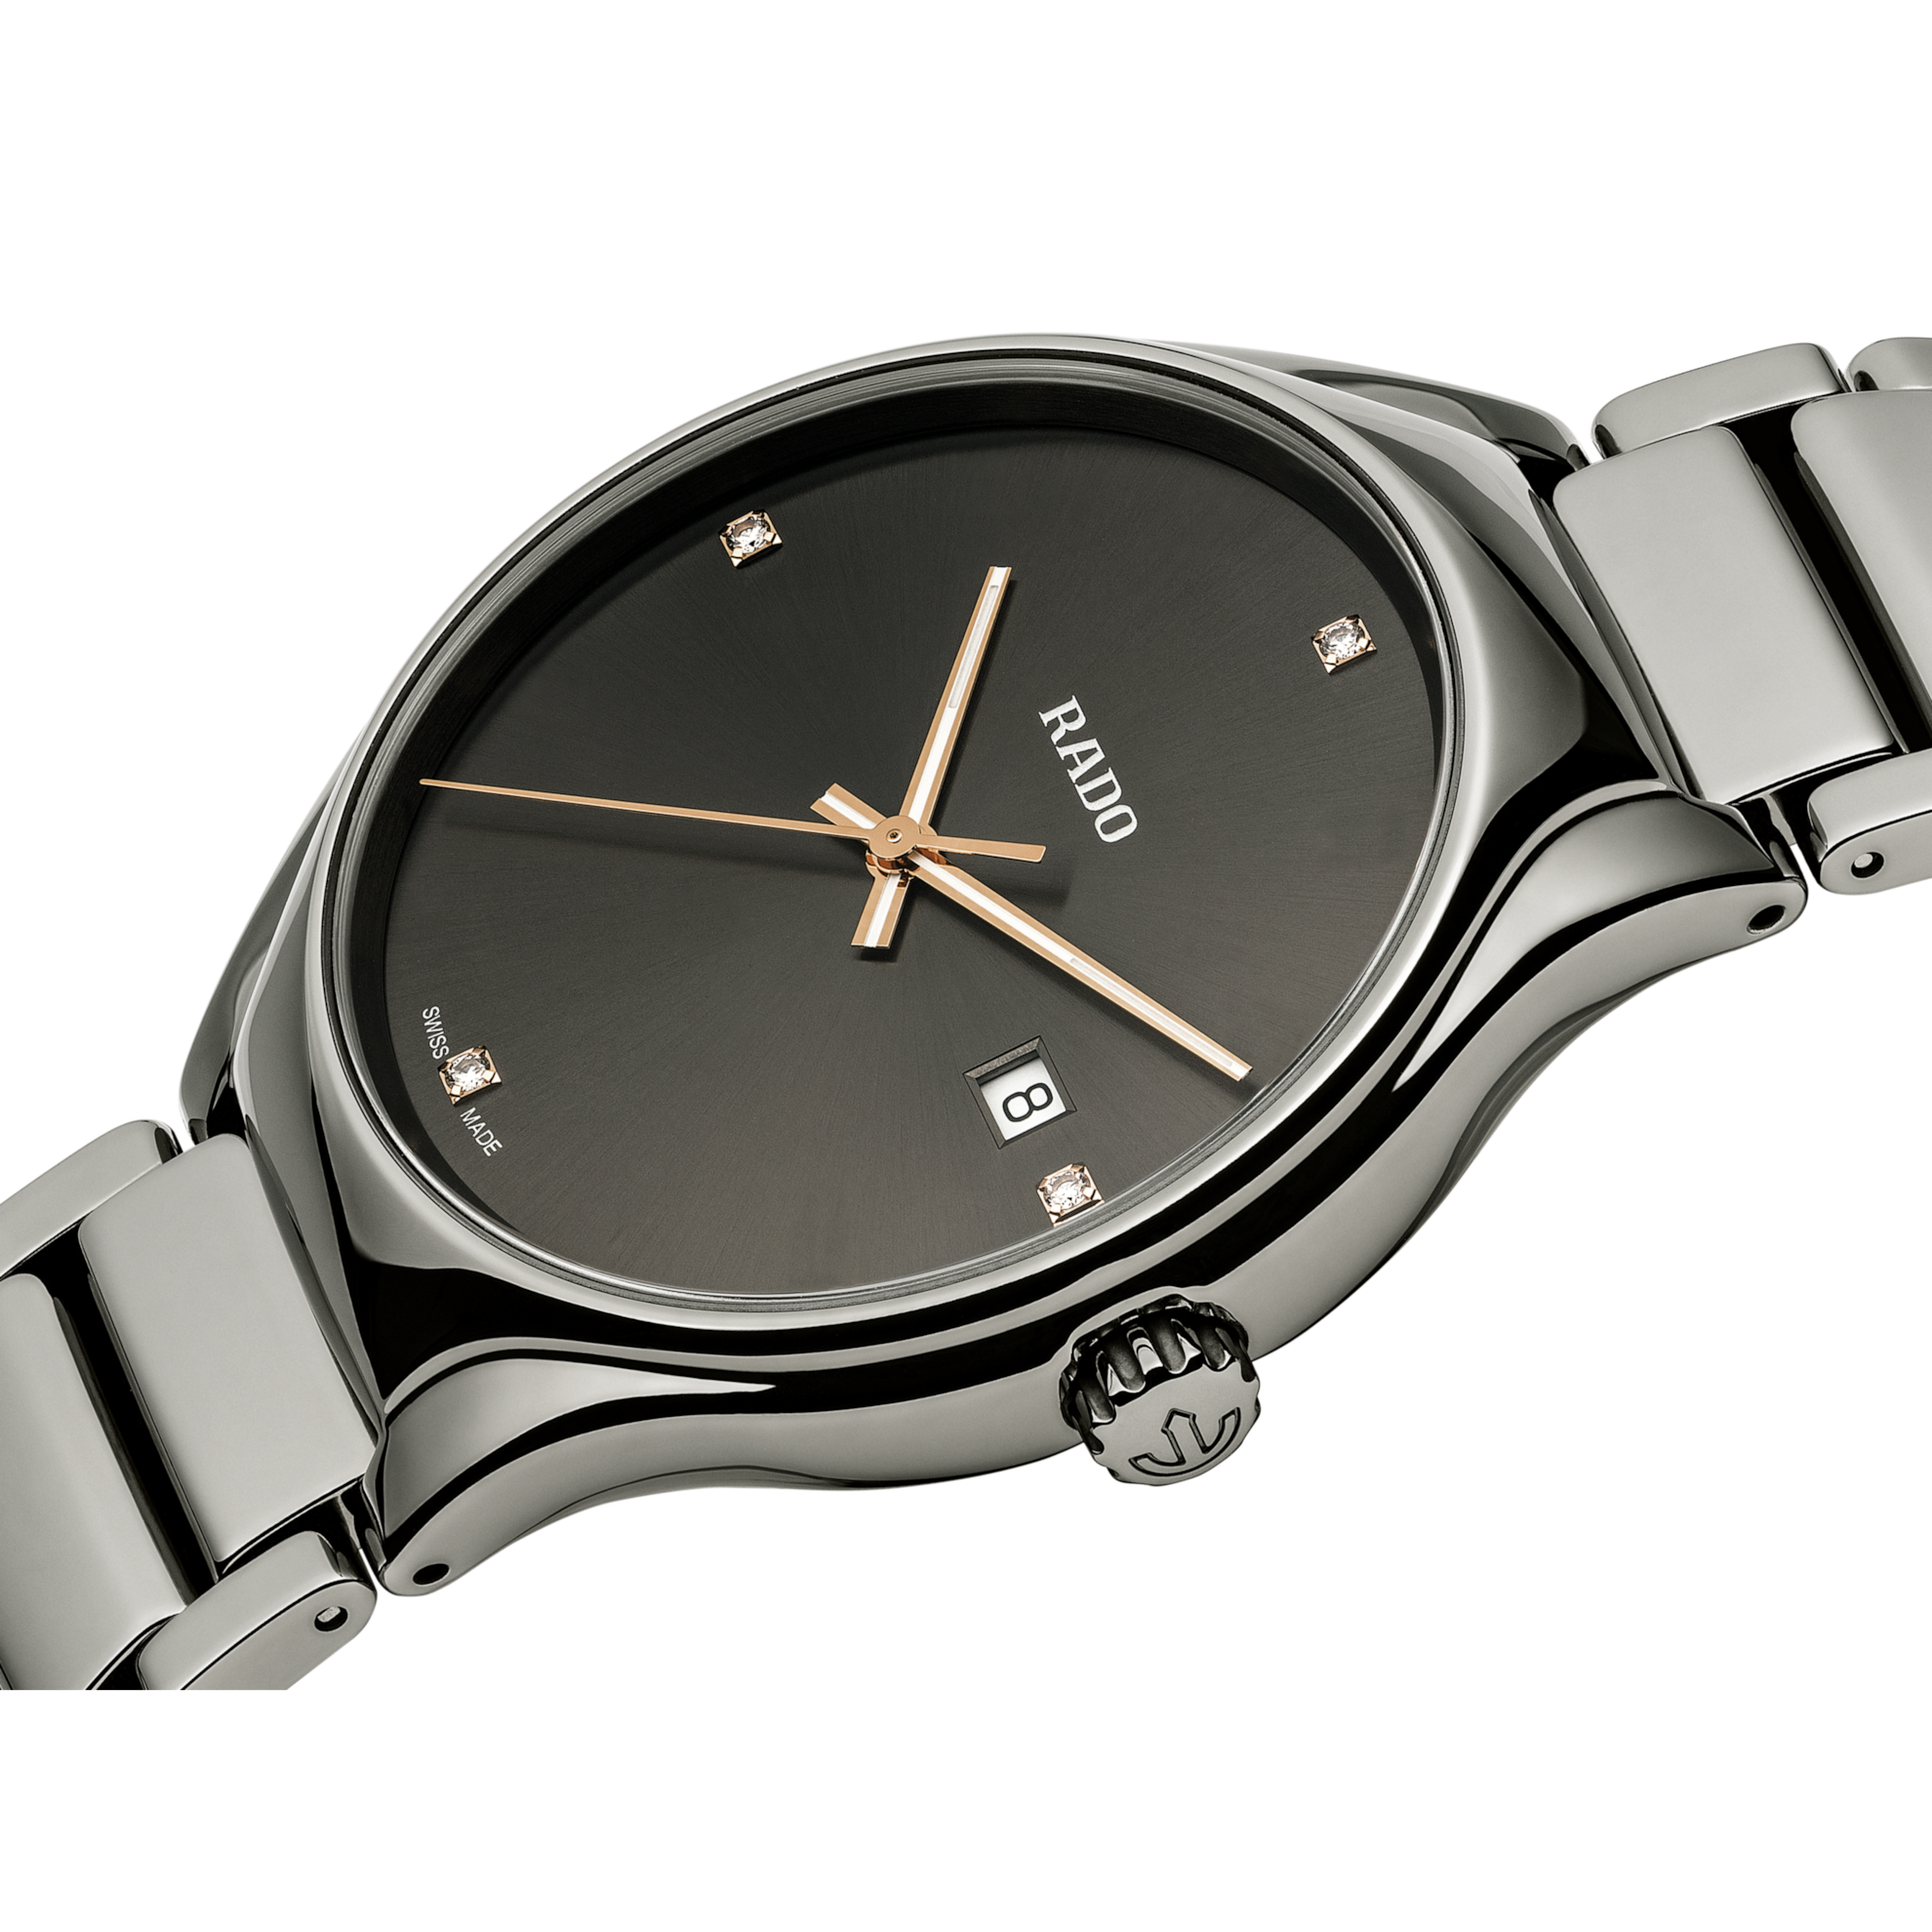 Rado True Grey Dial Diamond Watch for Men - Kamal Watch Company